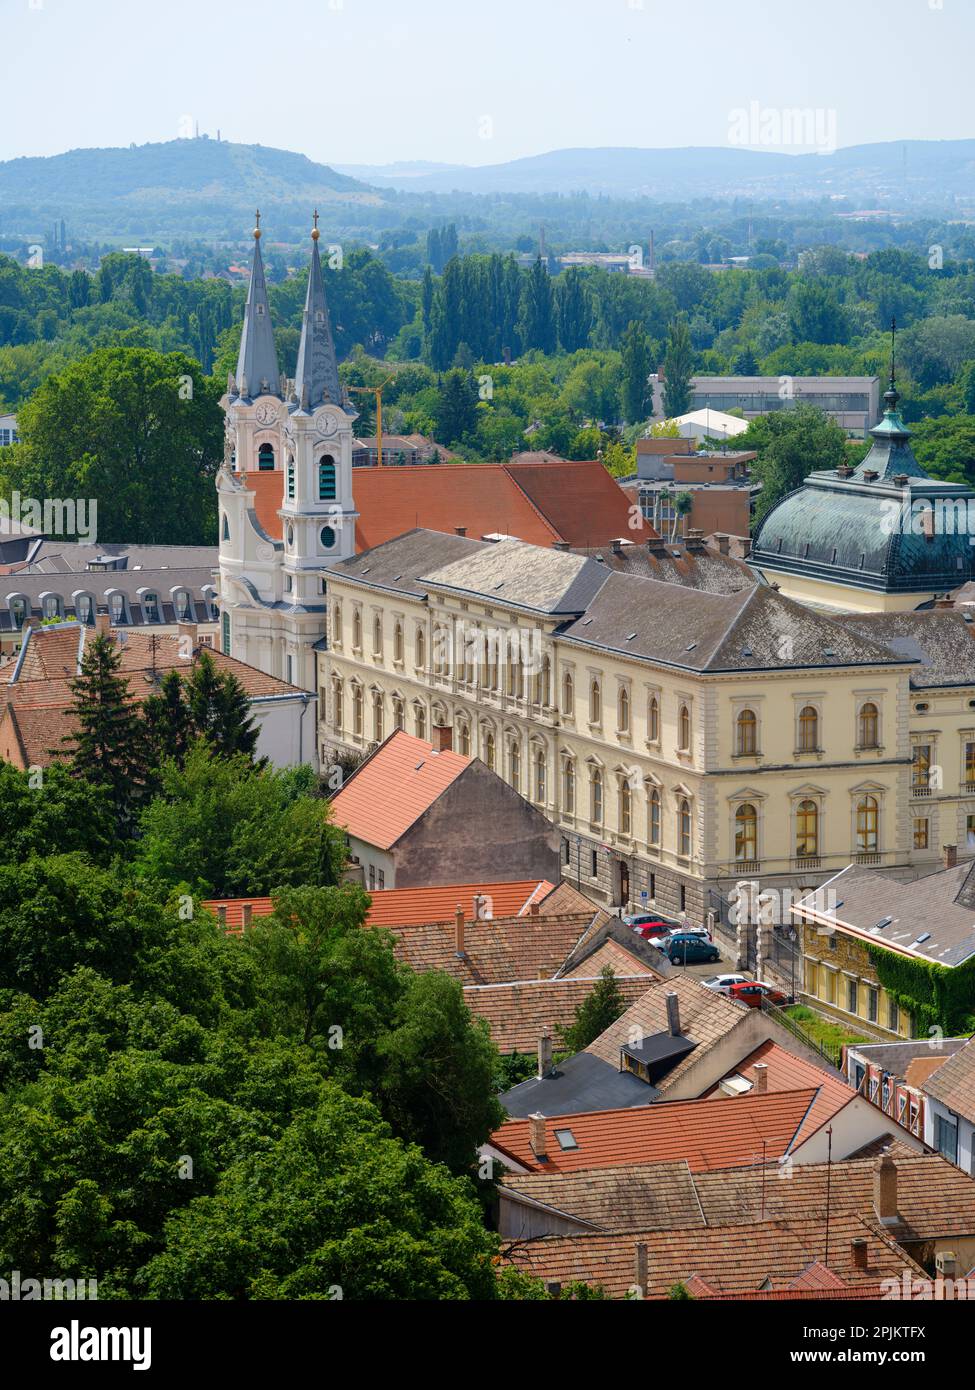 Vue depuis le château de montagne (Varhegy) à Esztergom vers la vieille ville et l'église Saint Ignace, Hongrie Banque D'Images